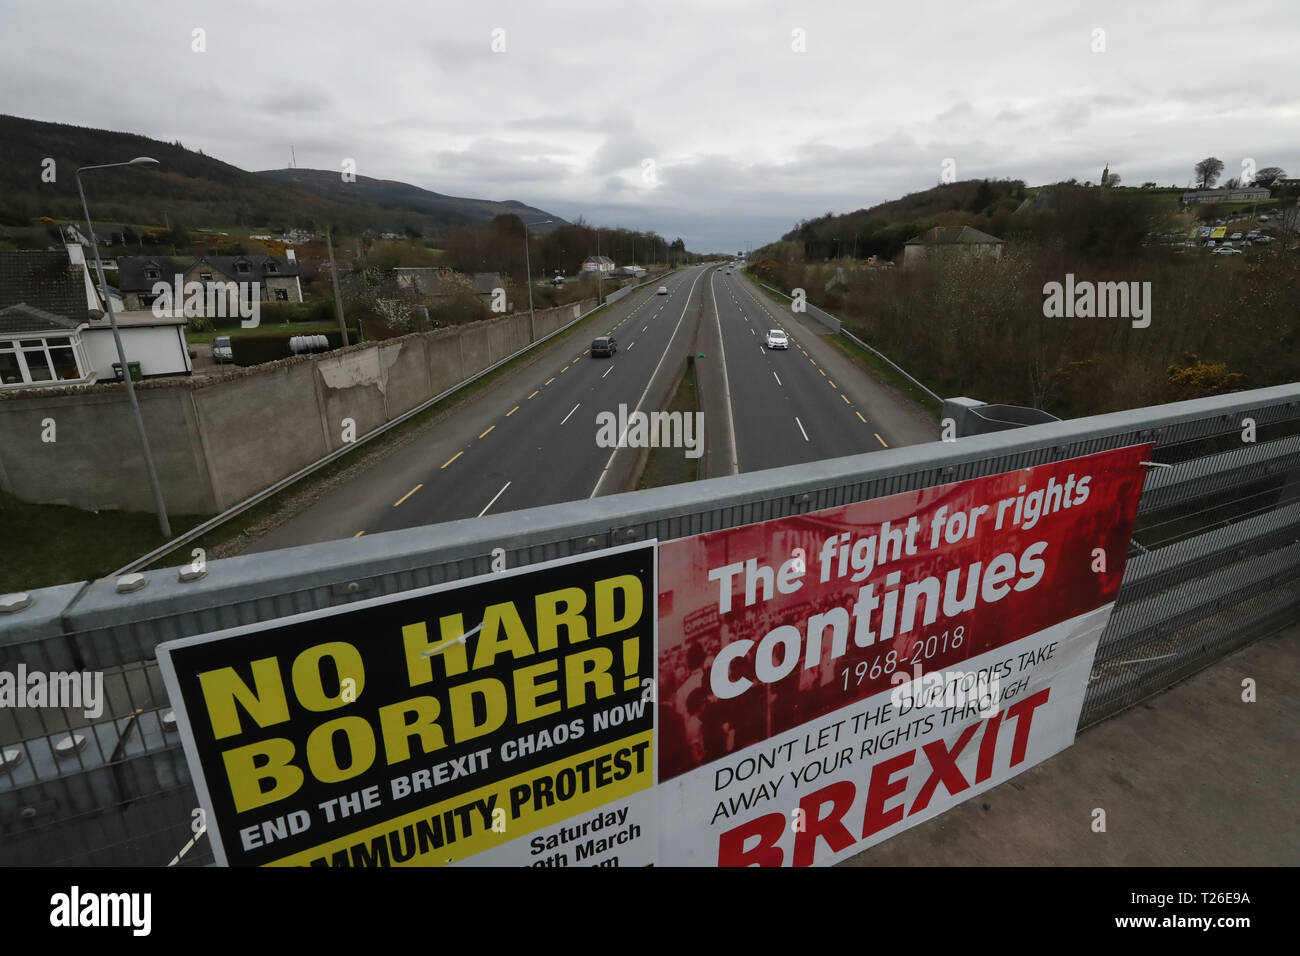 Le comunità frontaliere contro Brexit tenendo proteste sulla vecchia strada di Belfast in Carrickcarnon sul lato nord della frontiera irlandese, tra Newry e Dundalk. La giornata di protesta contro un bordo duro in Irlanda. Foto Stock